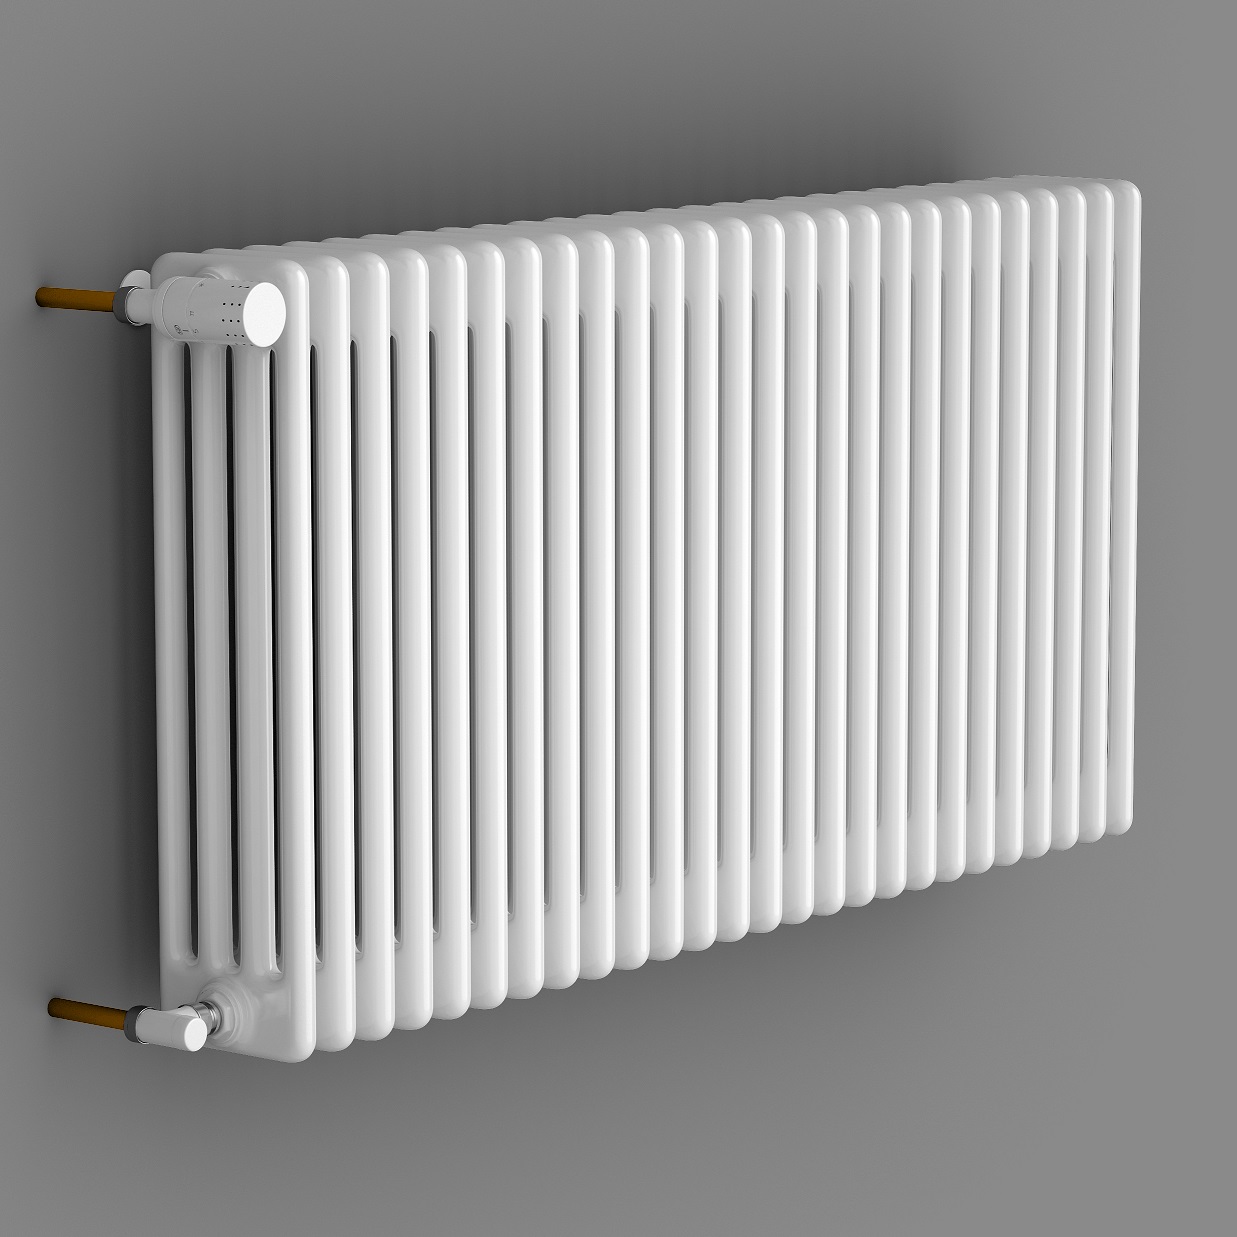 Стальные металлические радиаторы отопления, фото, отзывы